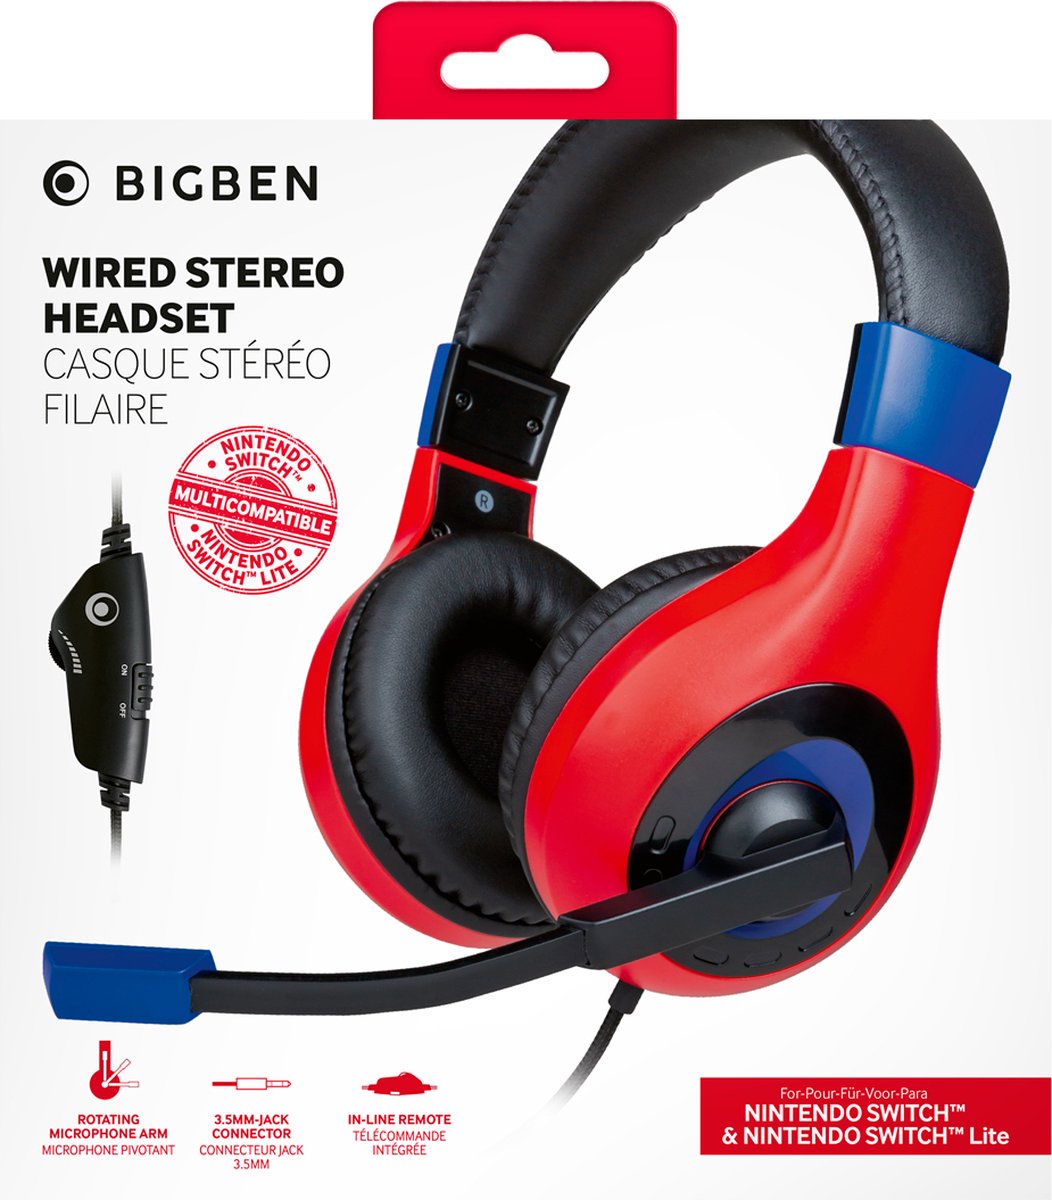 Bigben Auriculares PS4 con Control de Volumen/Micrófono